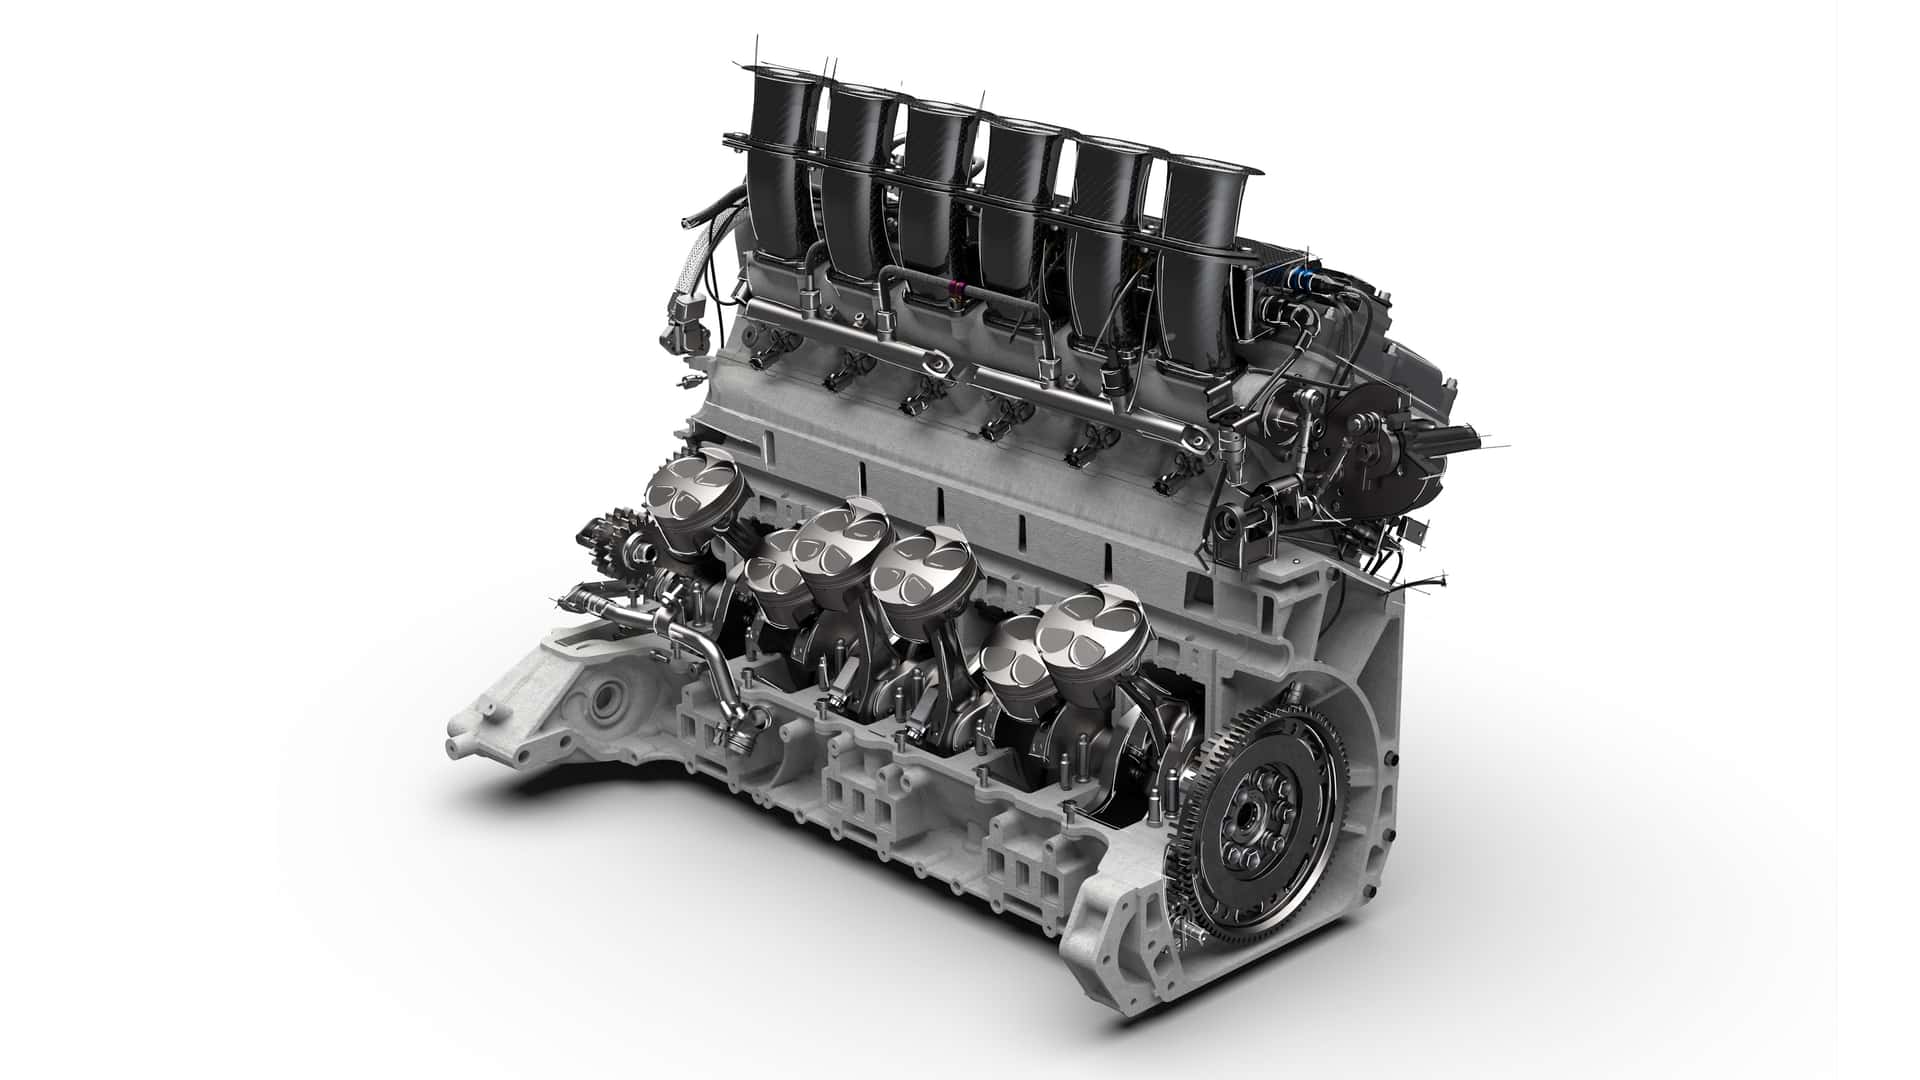 Pagani Huayra R Evo: Động cơ V12 công suất 900 mã với tấm mui mở